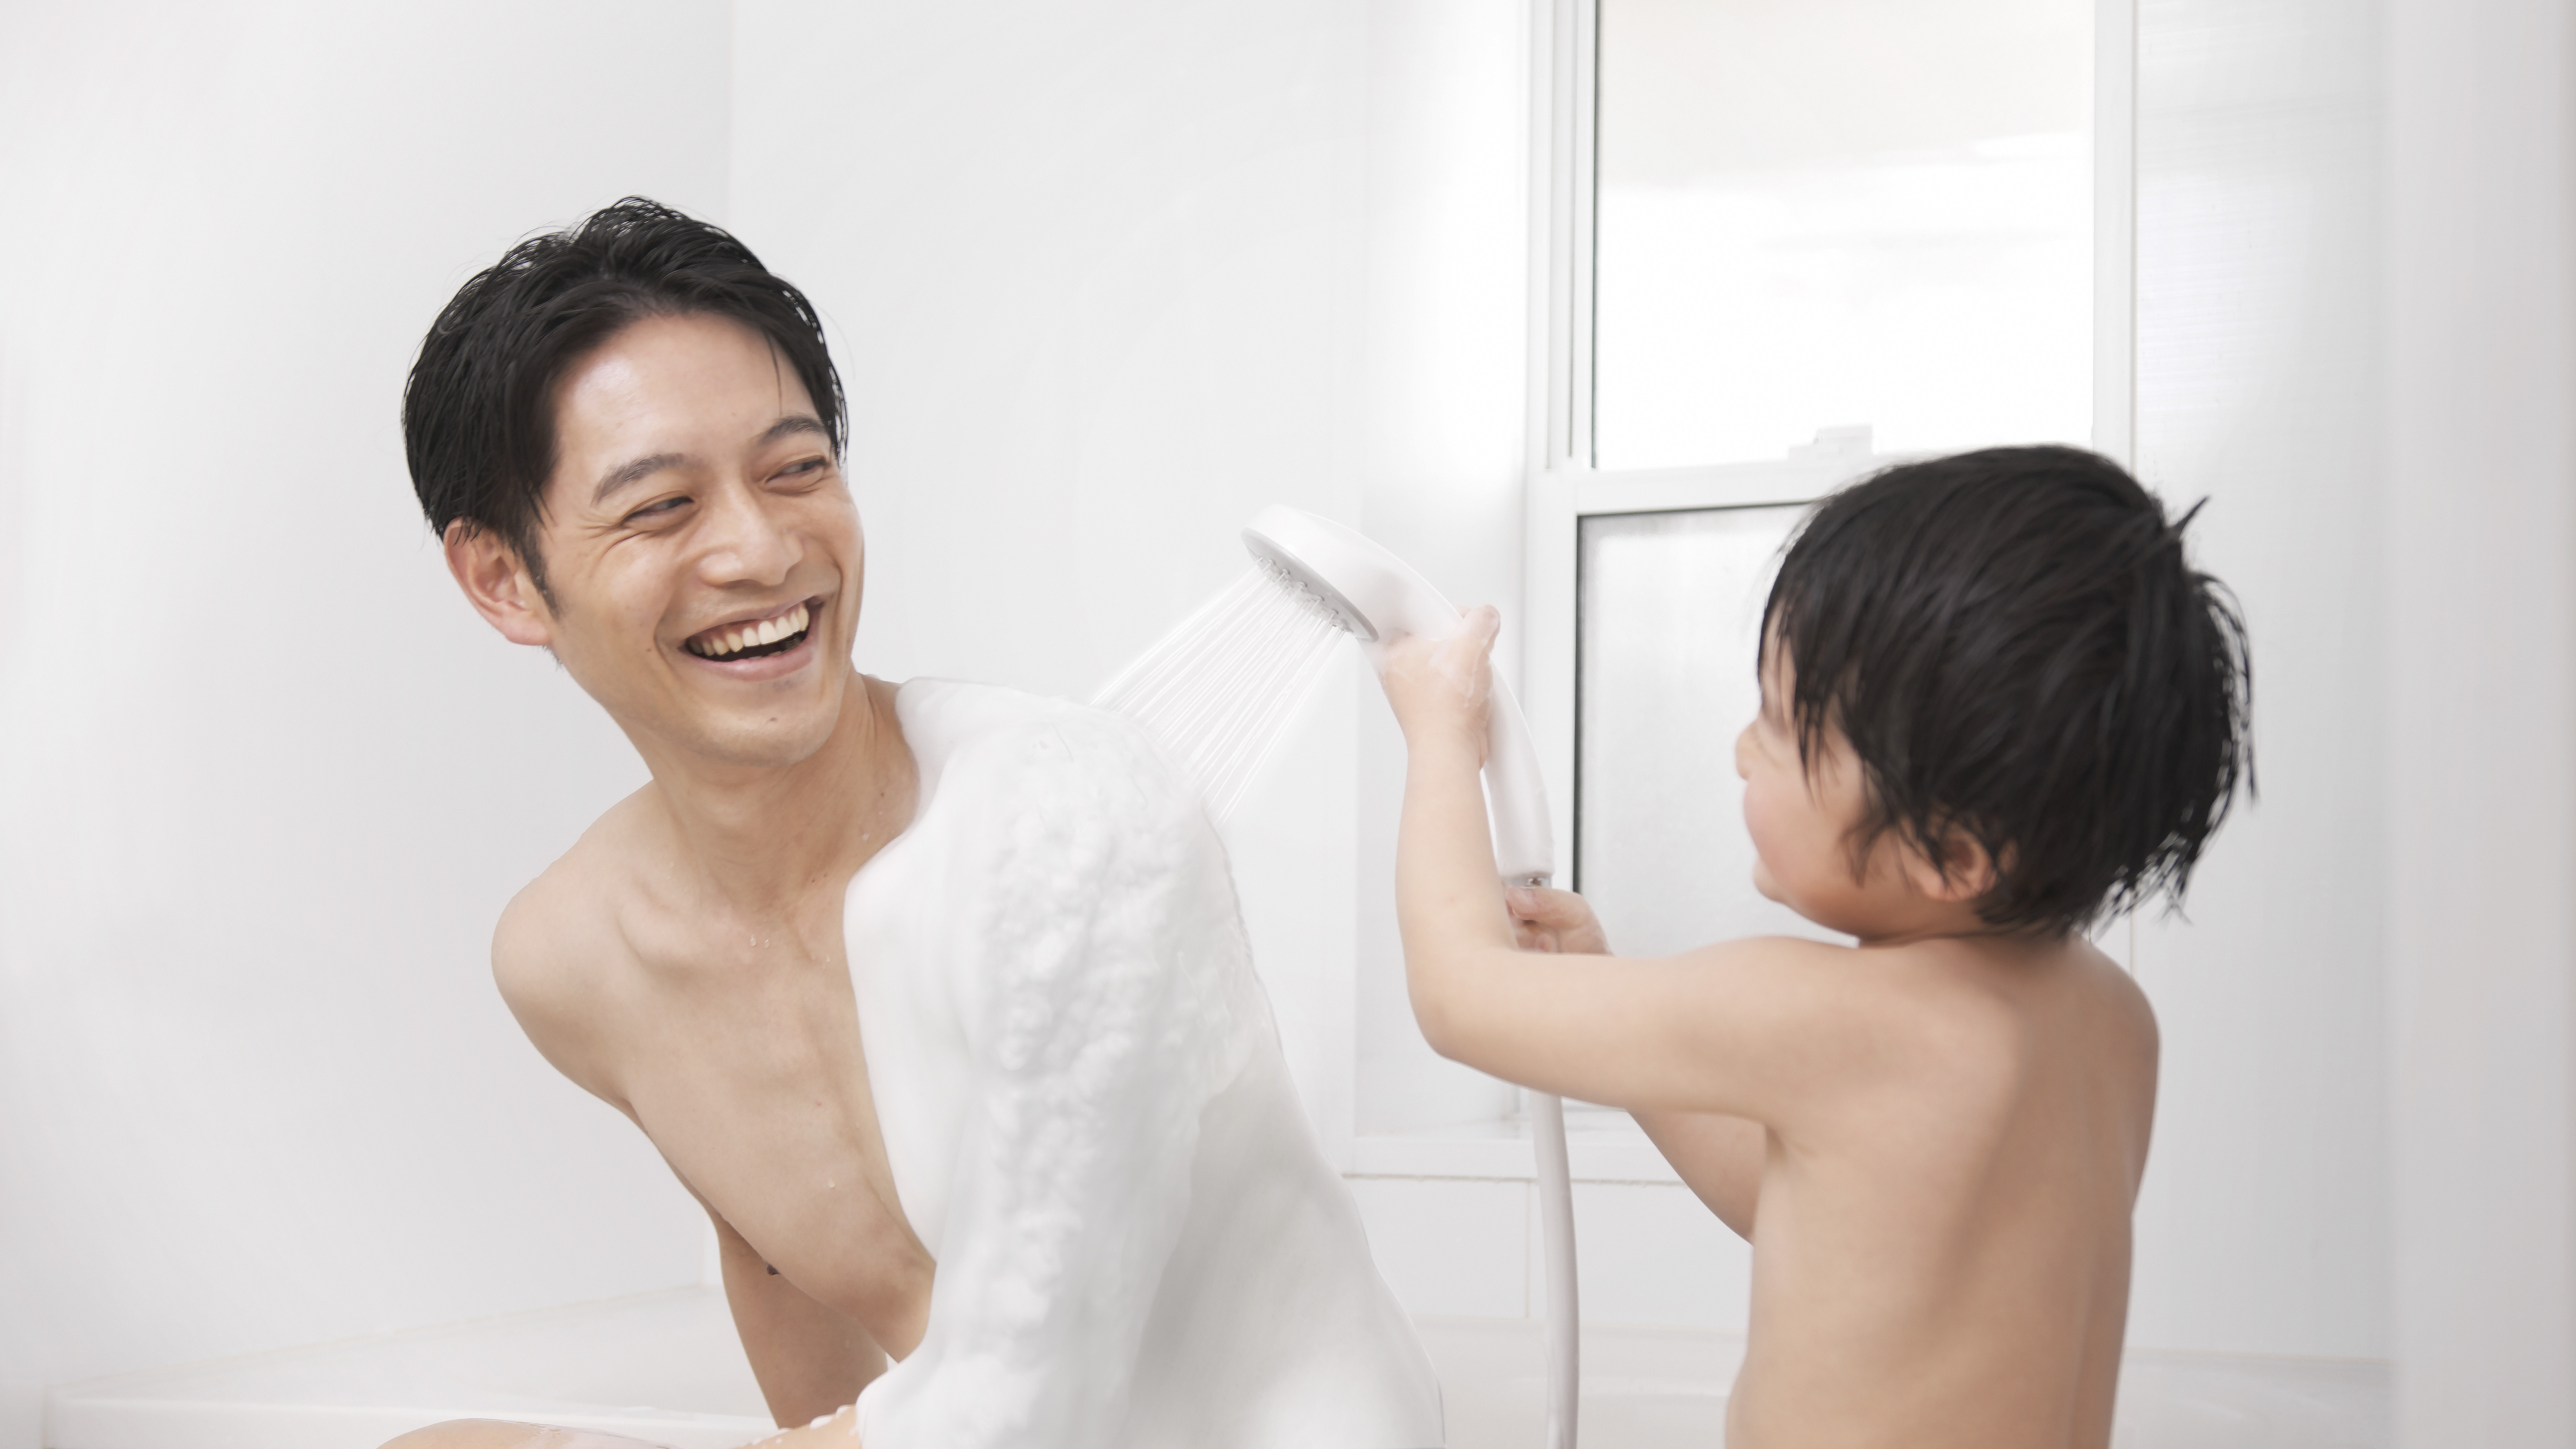 “絹泡”を生成する泡シャワー「KINUAMI U」の一般先行予約販売を開始 サムネイル画像